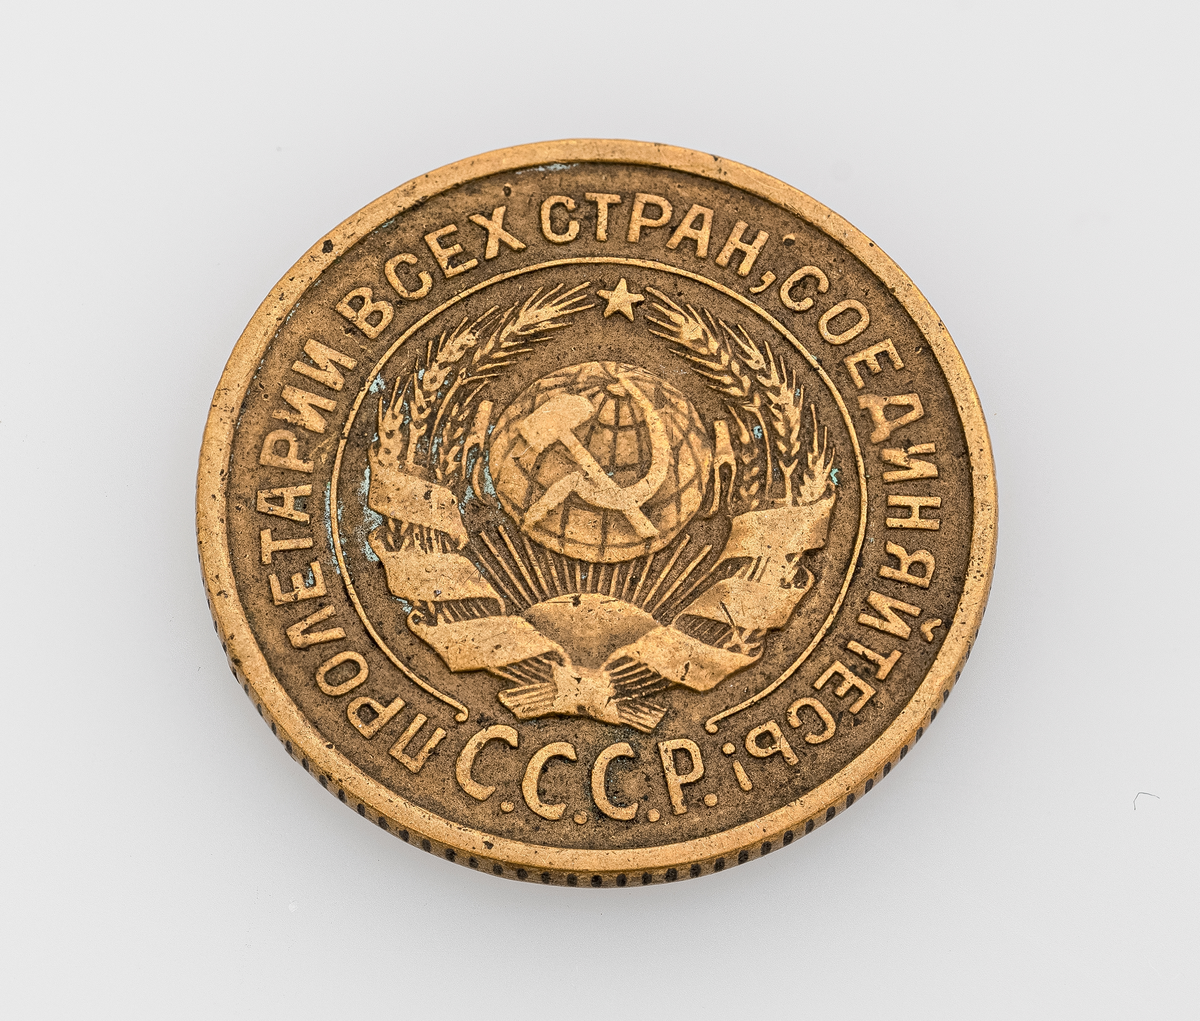 En sovjetisk 2-kopek fra 1926. Mynten er laget av aluminium og bronse. På den ene siden er det valør På den andre siden er også tekst samt illustrasjon av en laubærkrans med sigd og hammer i midten. All tekst er på sovjetisk/russisk. Mynten var en standard sirkulasjonsmynt i perioden 1924-1958.